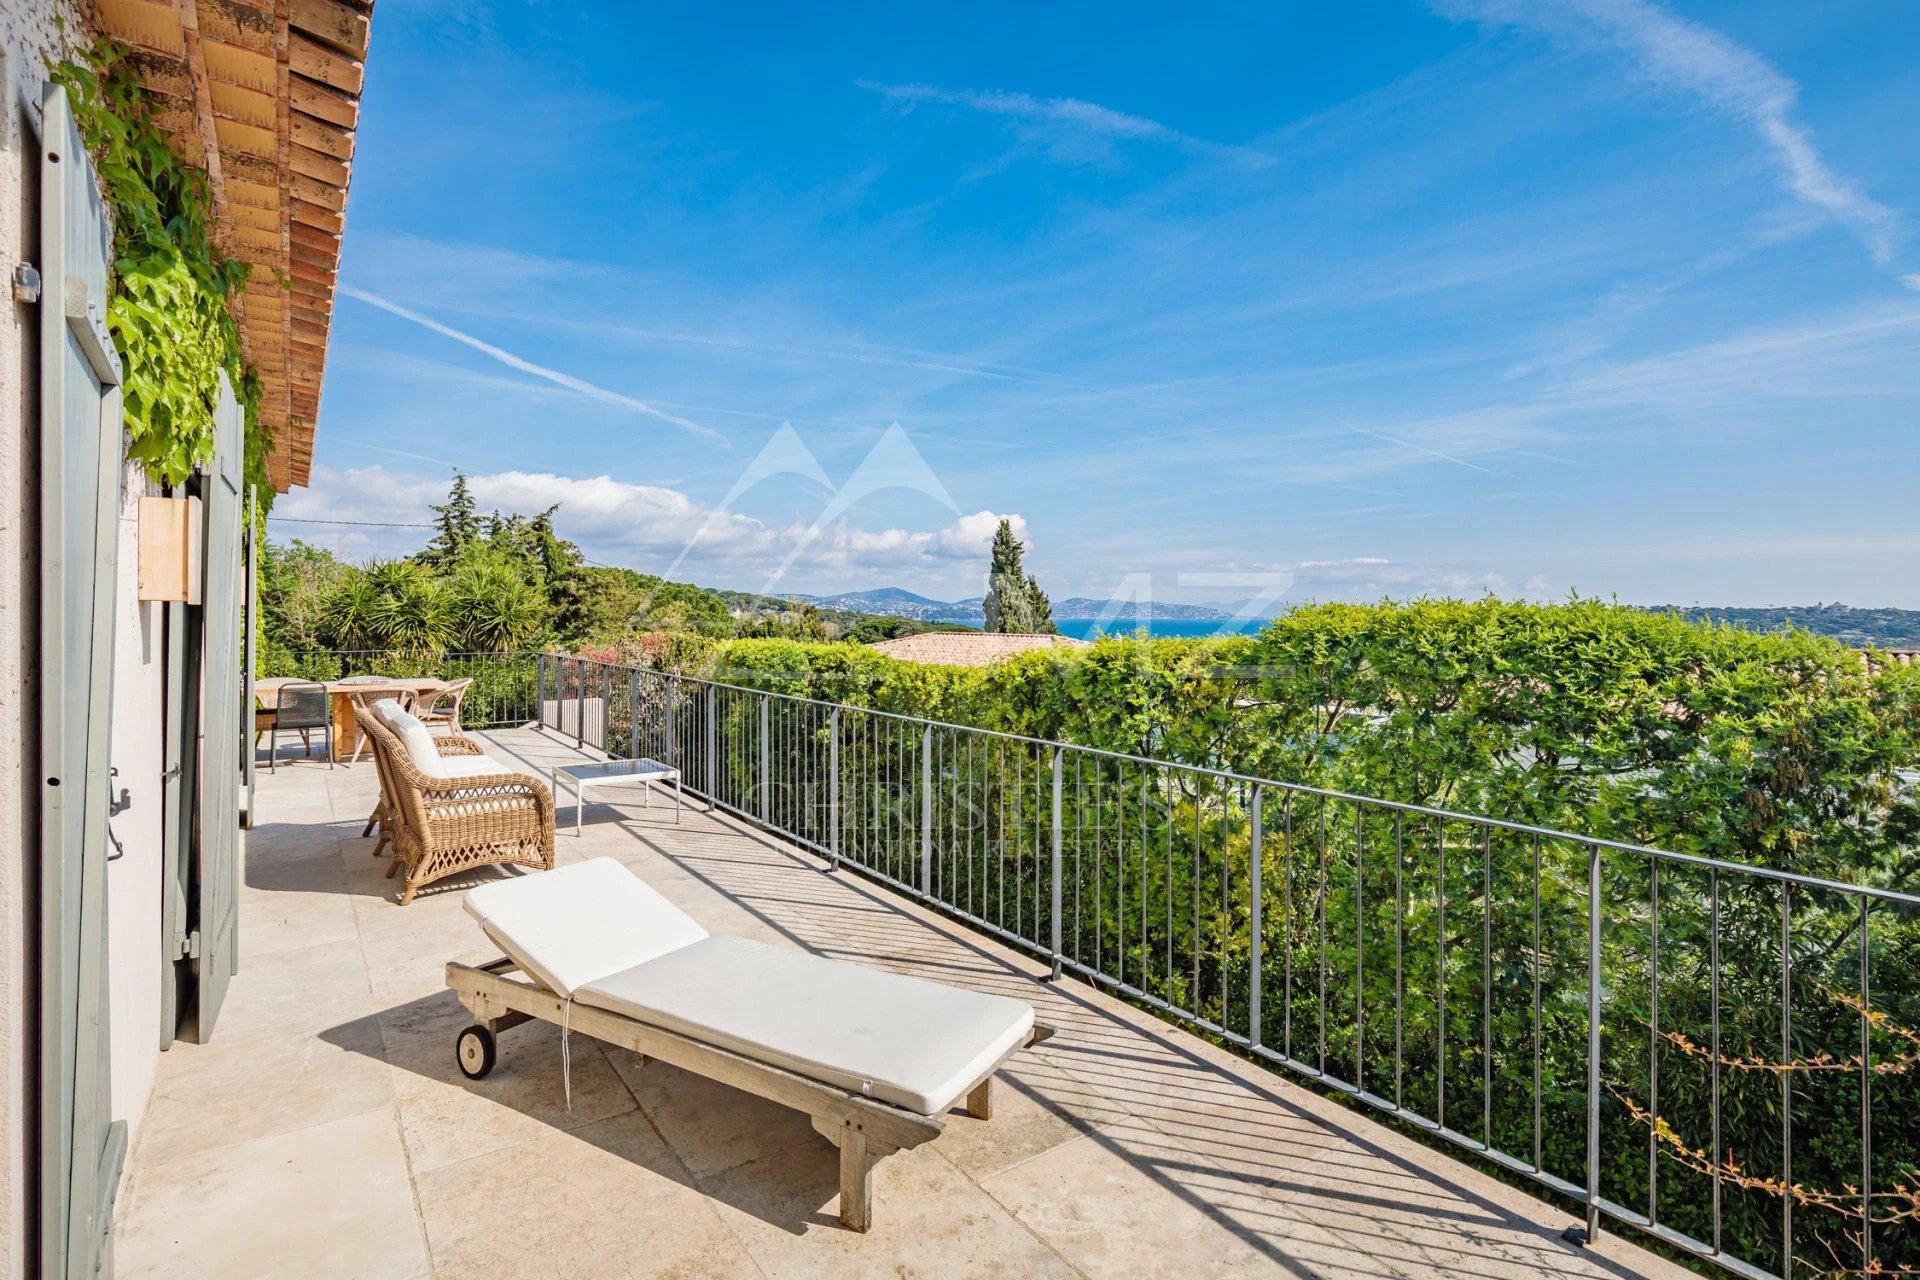 Saint-Tropez - Beautiful house for sale